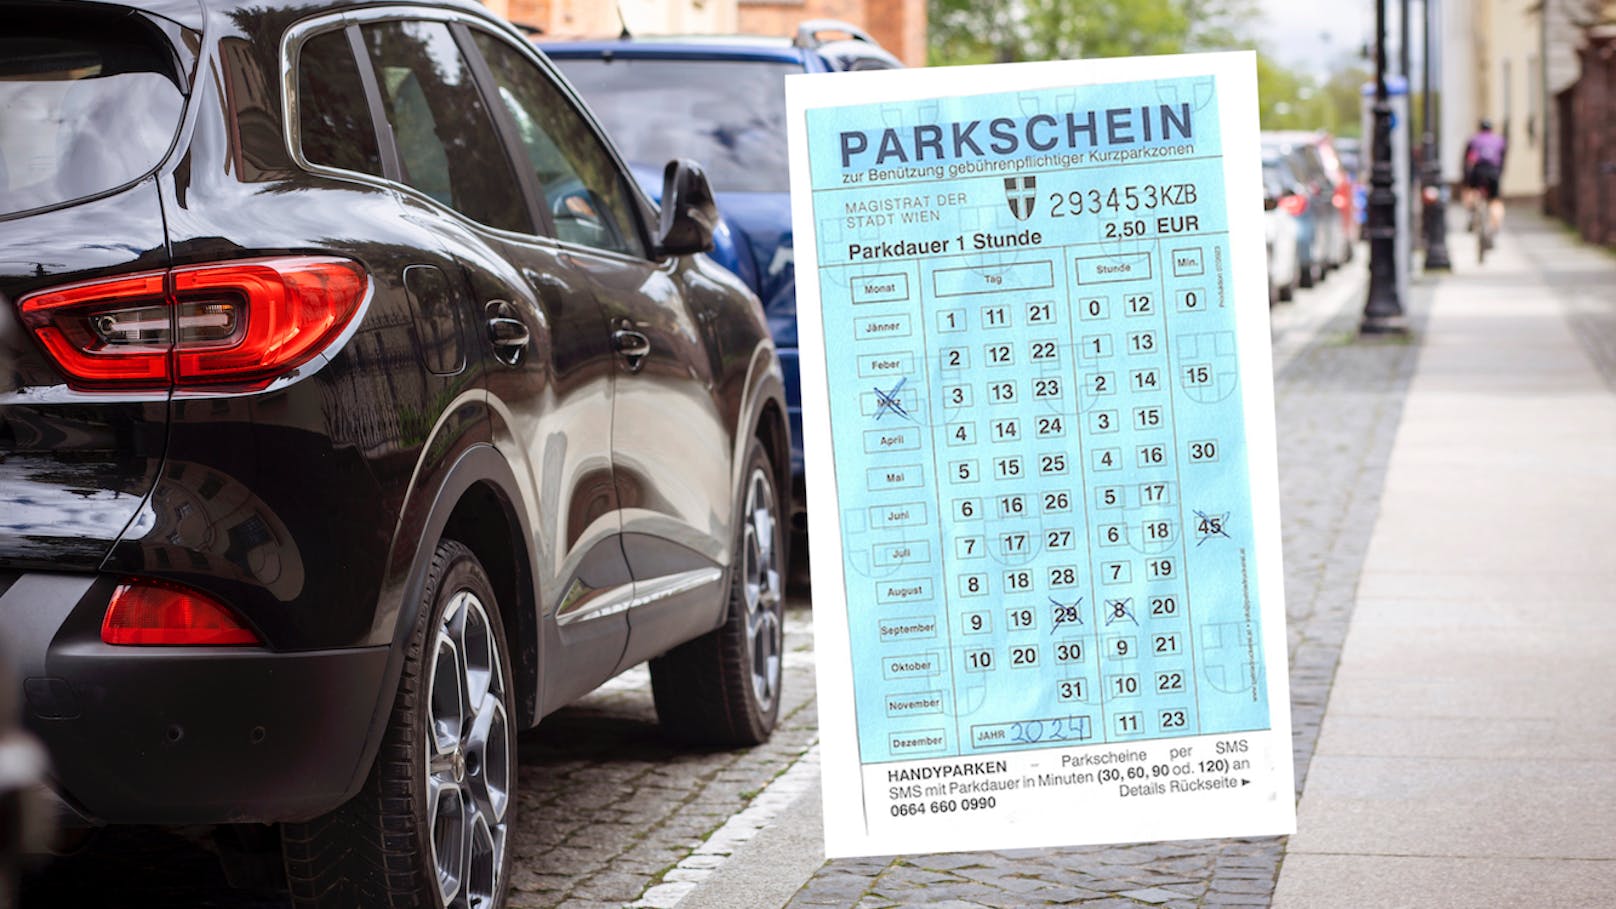 Wiener Parkschein in Schwechat ausgefüllt – 27 € Strafe